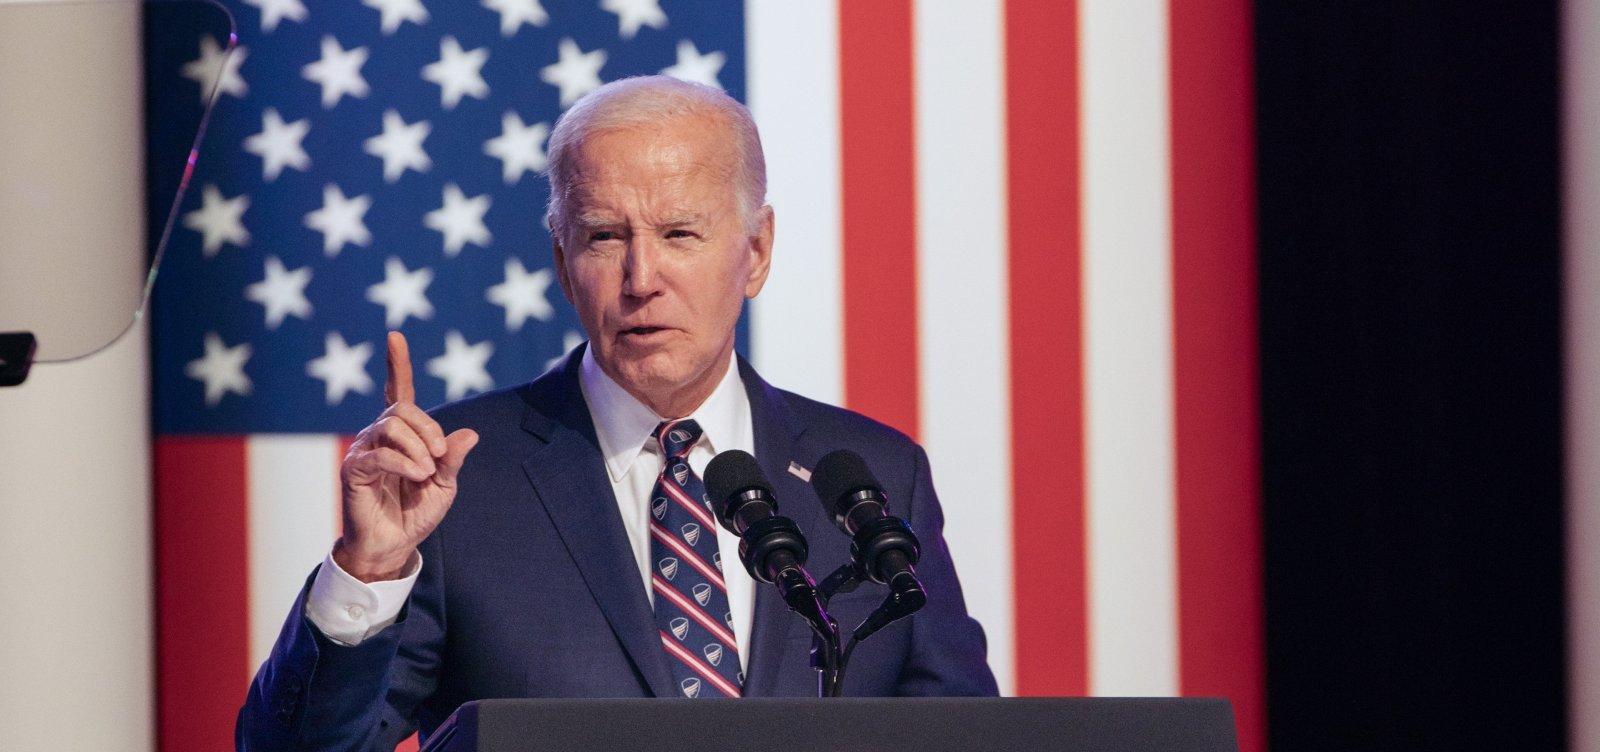 Biden recusa pedidos para desistir e confronta partidários: "É hora de acabar com isso"